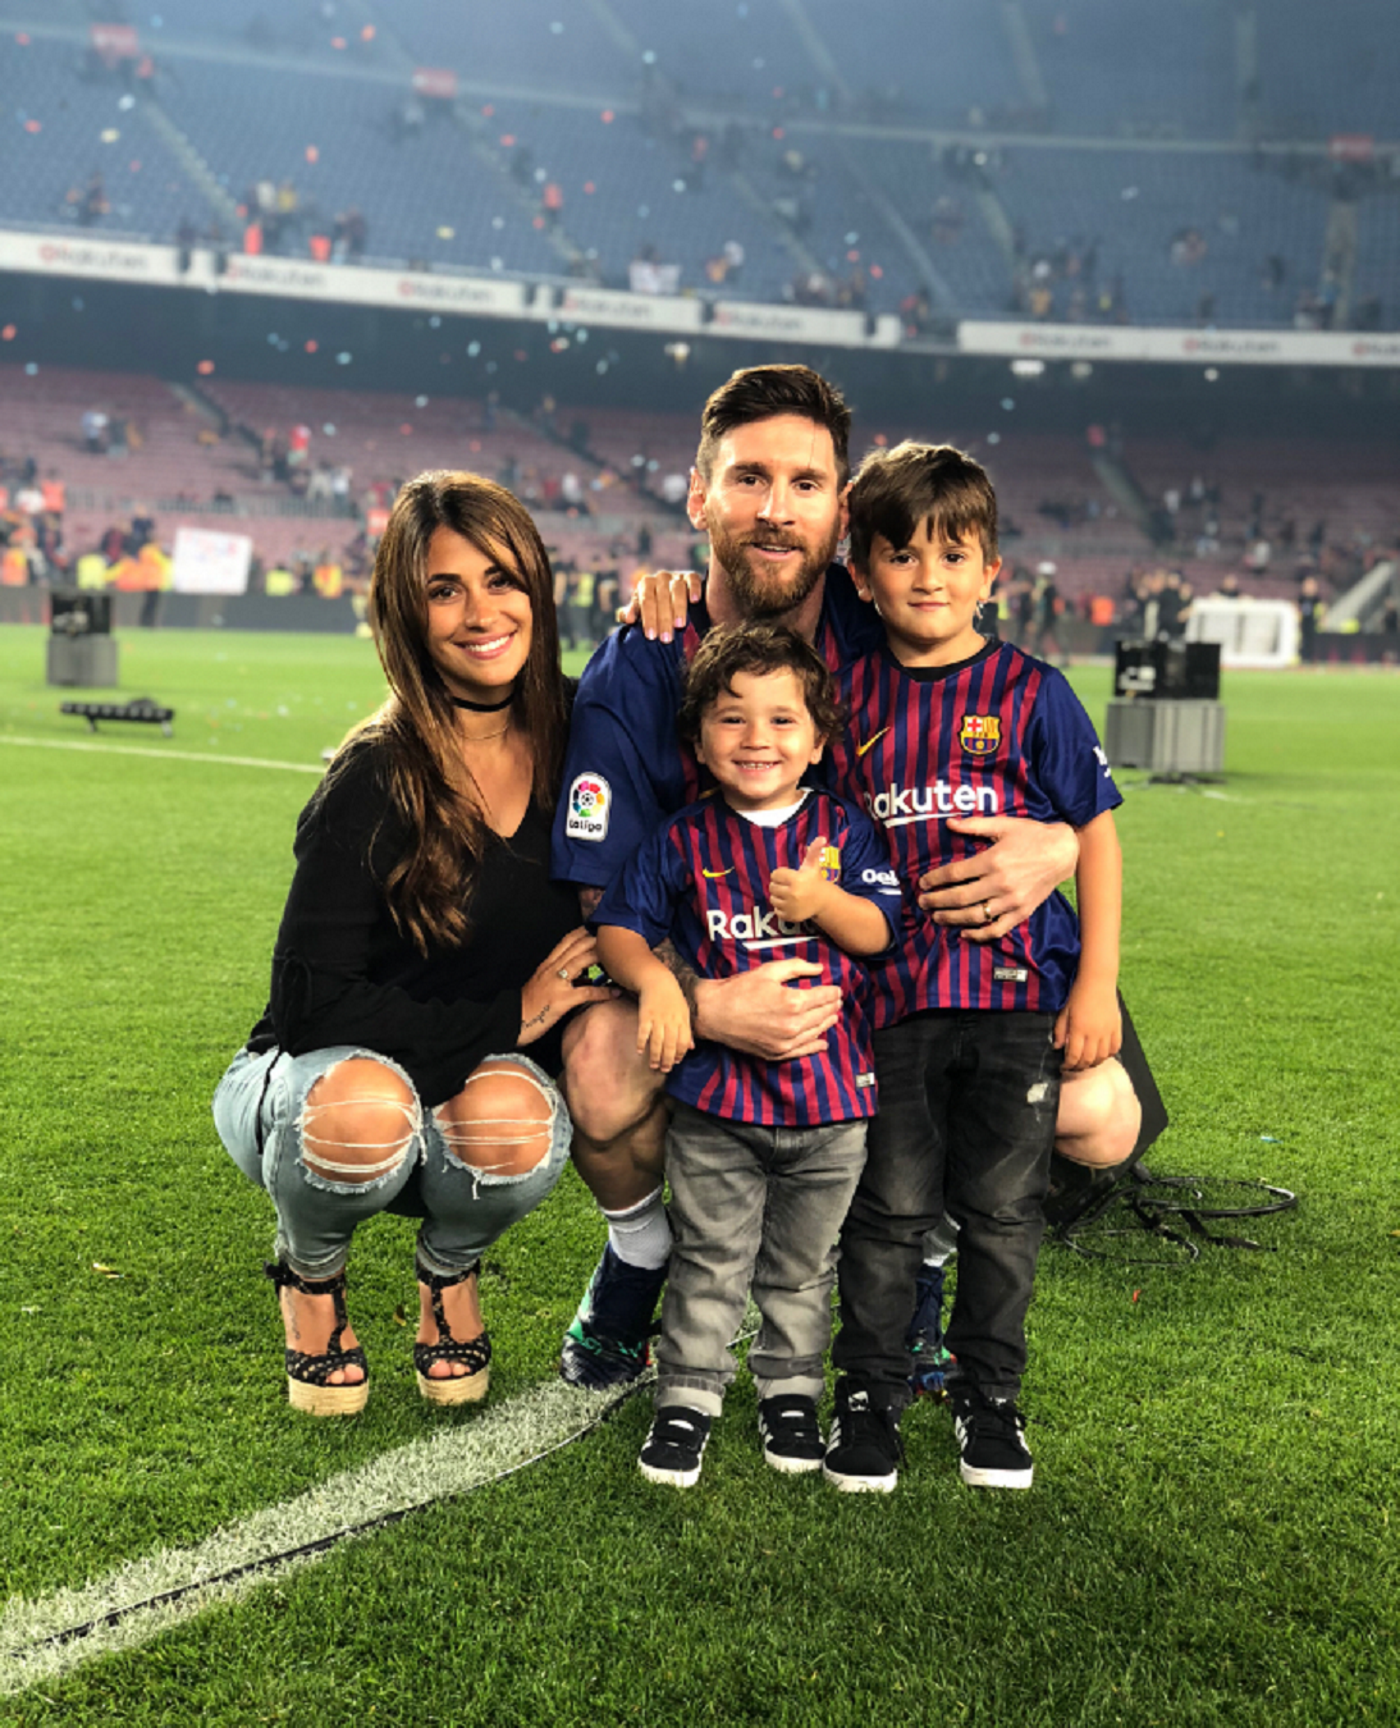 Messi ataca Madrid i defensa Catalunya presumint de fills 'catalans'